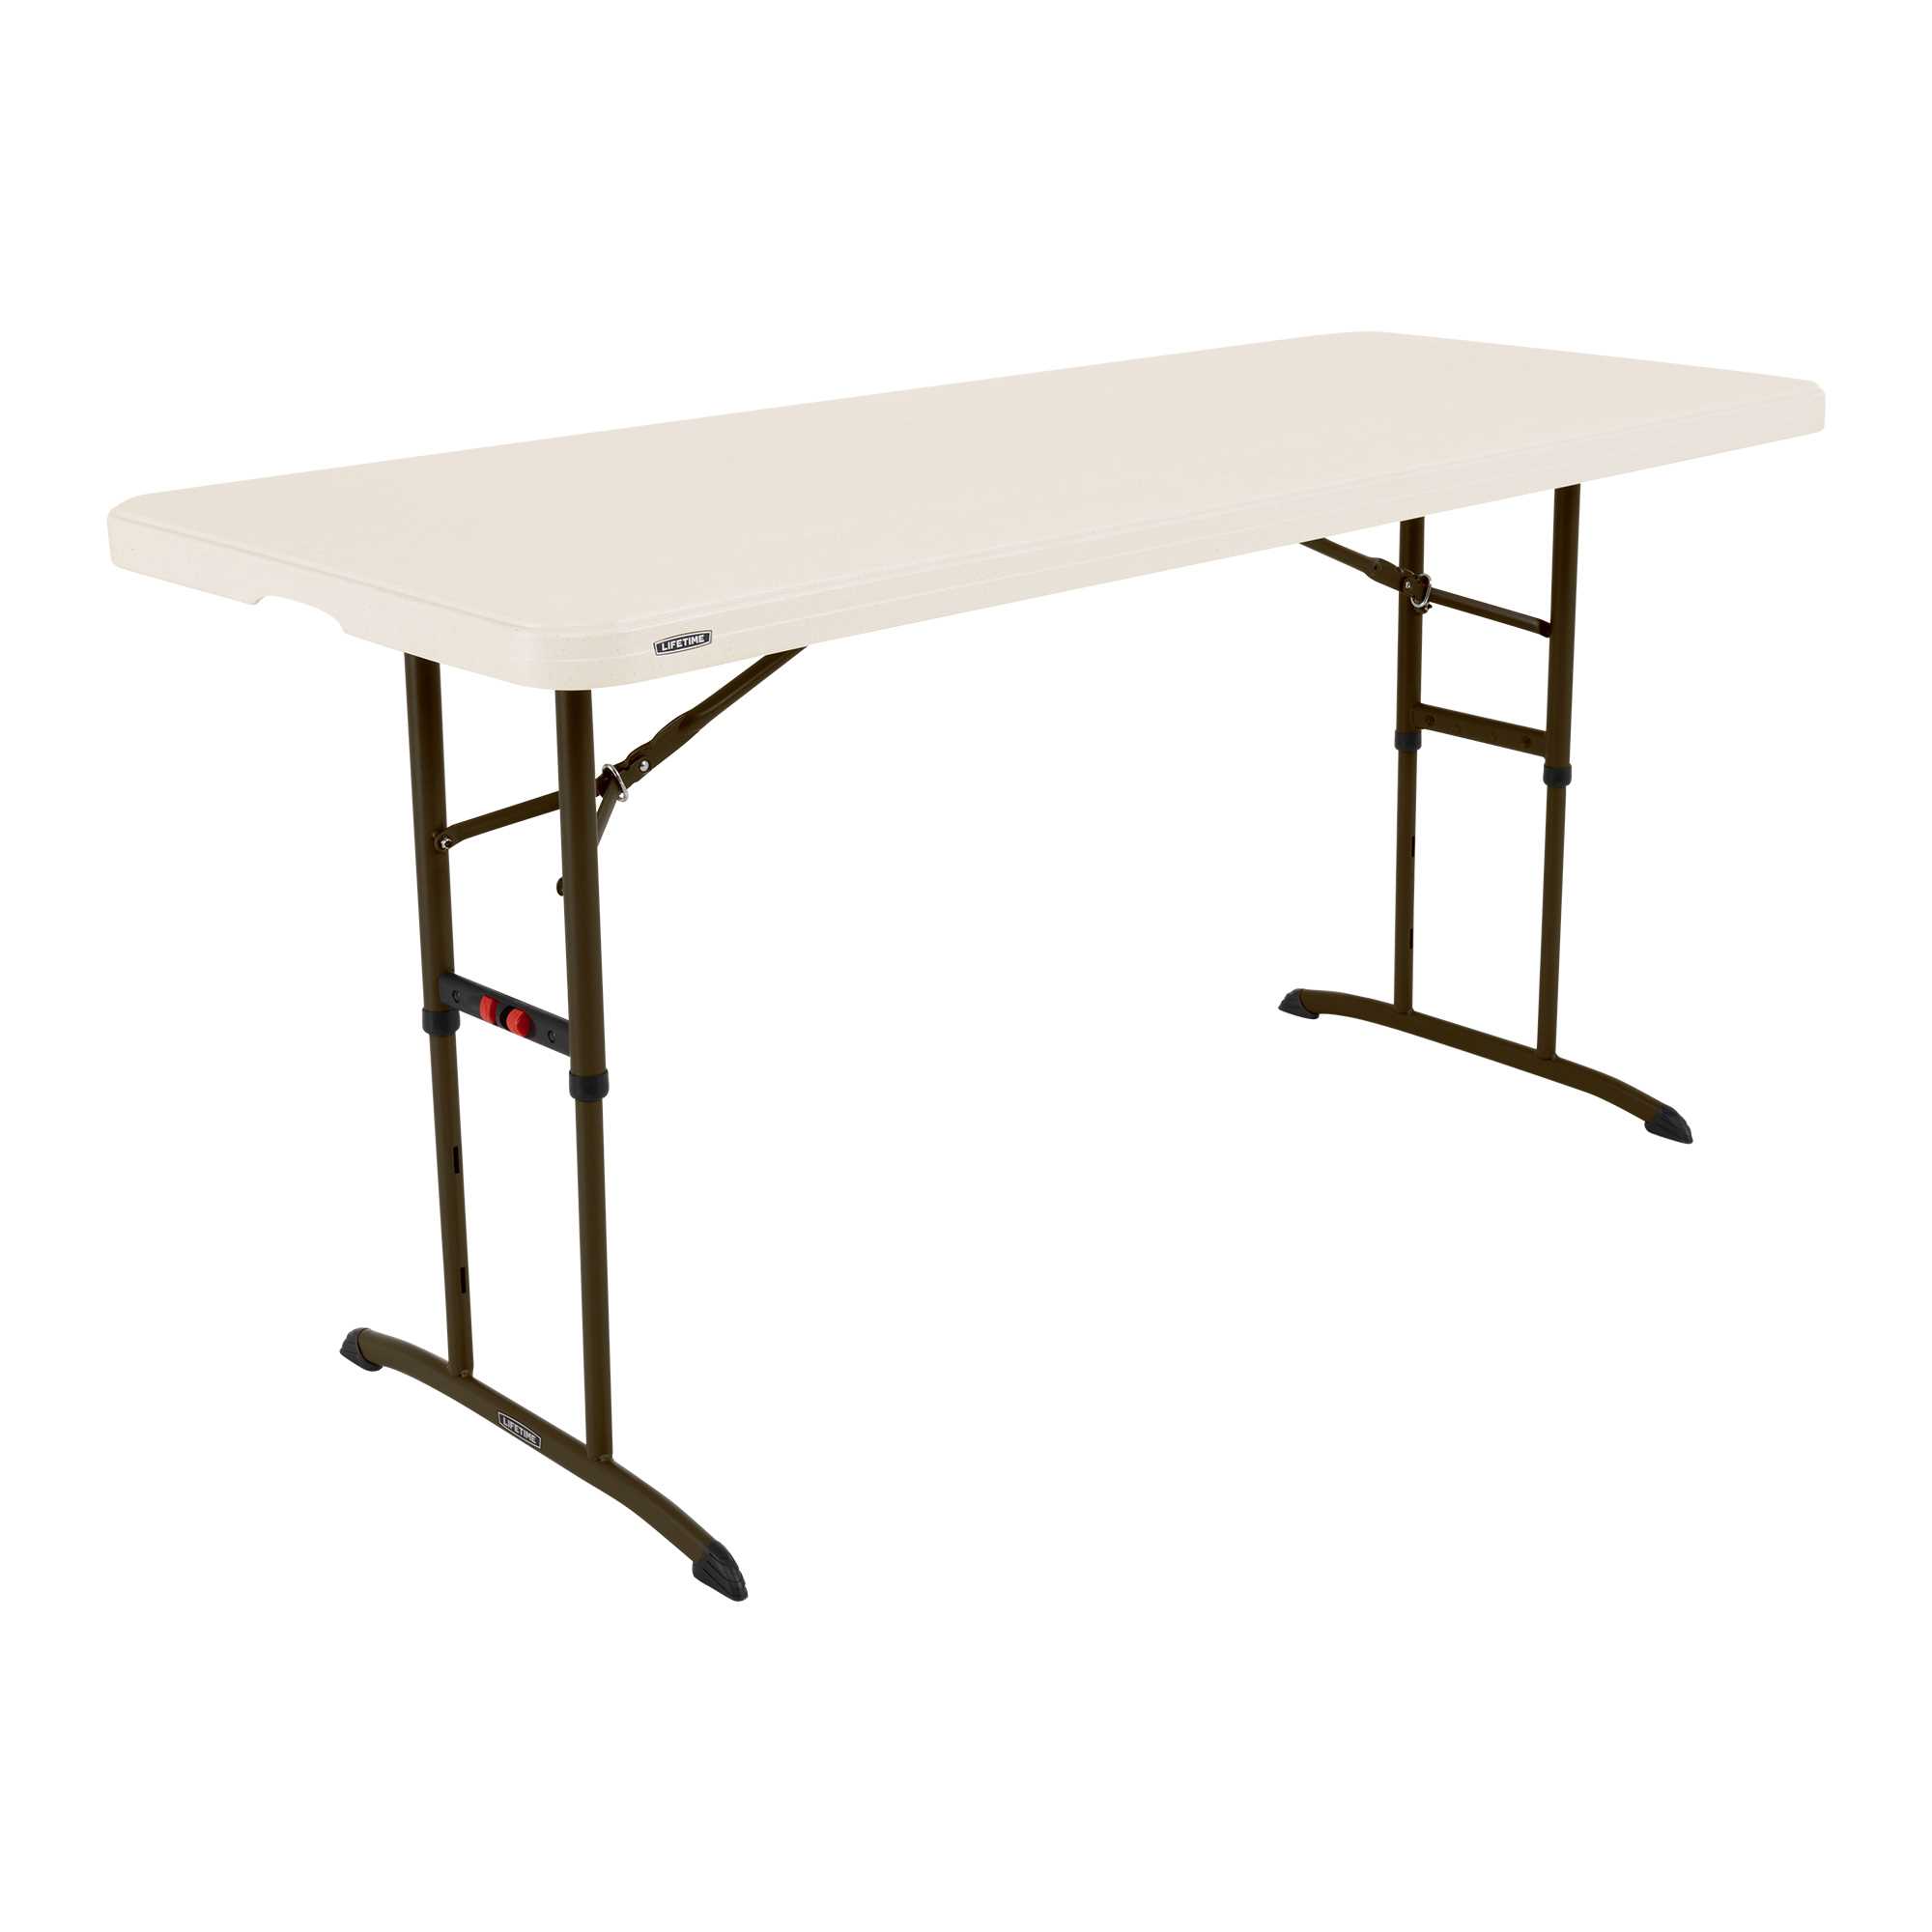 Table pliante ajustable rectangulaire 183cm / 8 personnes